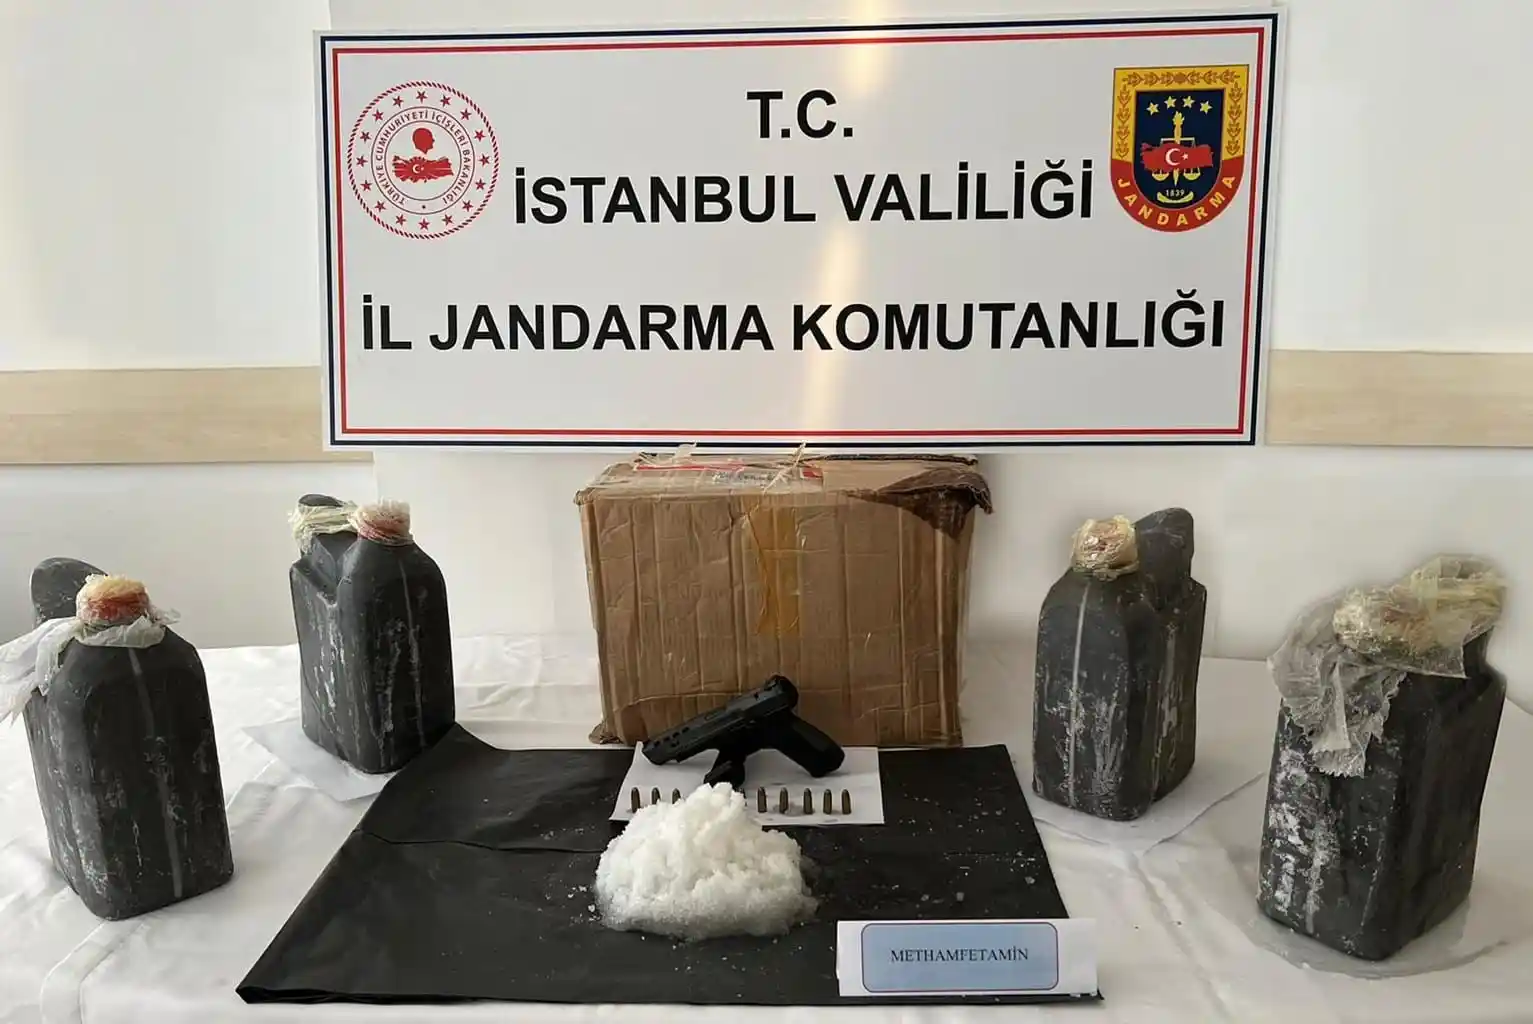 İstanbul'da uyuşturucu operasyonu: 44 kilogram uyuşturucu ele geçirildi
